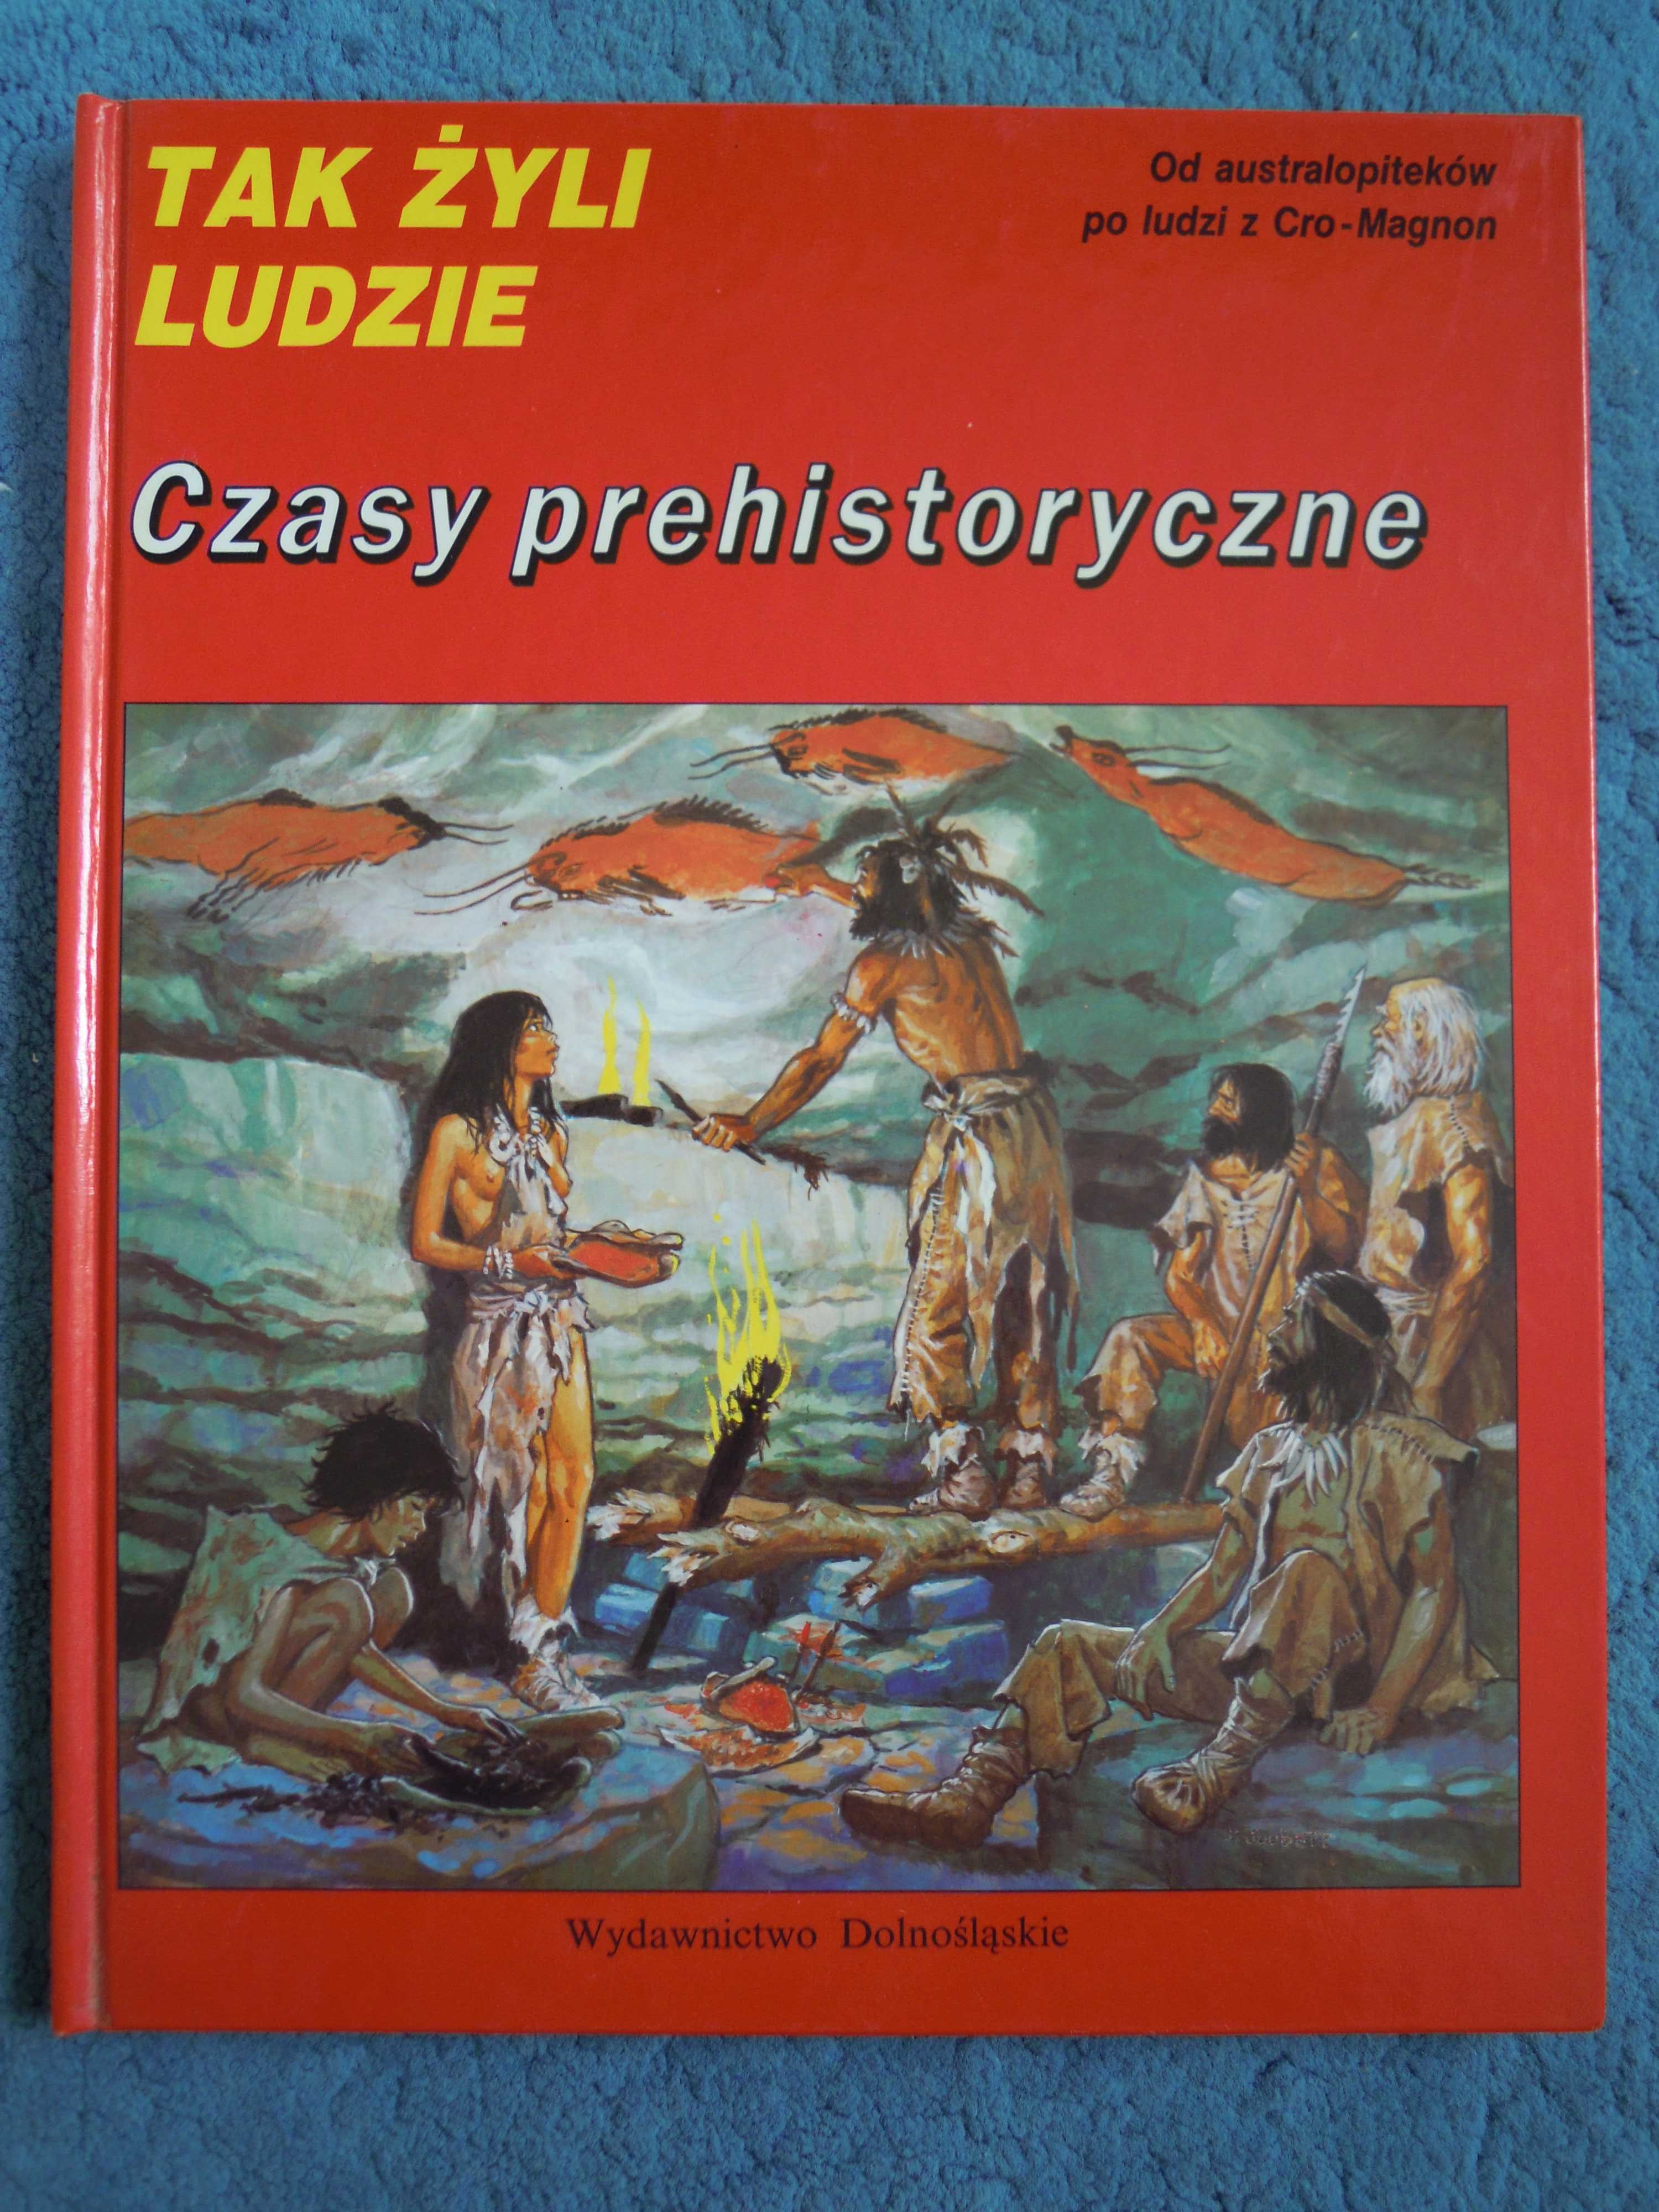 ""Tak żyli ludzie: Czasy prehistoryczne" Louis-Rene Nougier